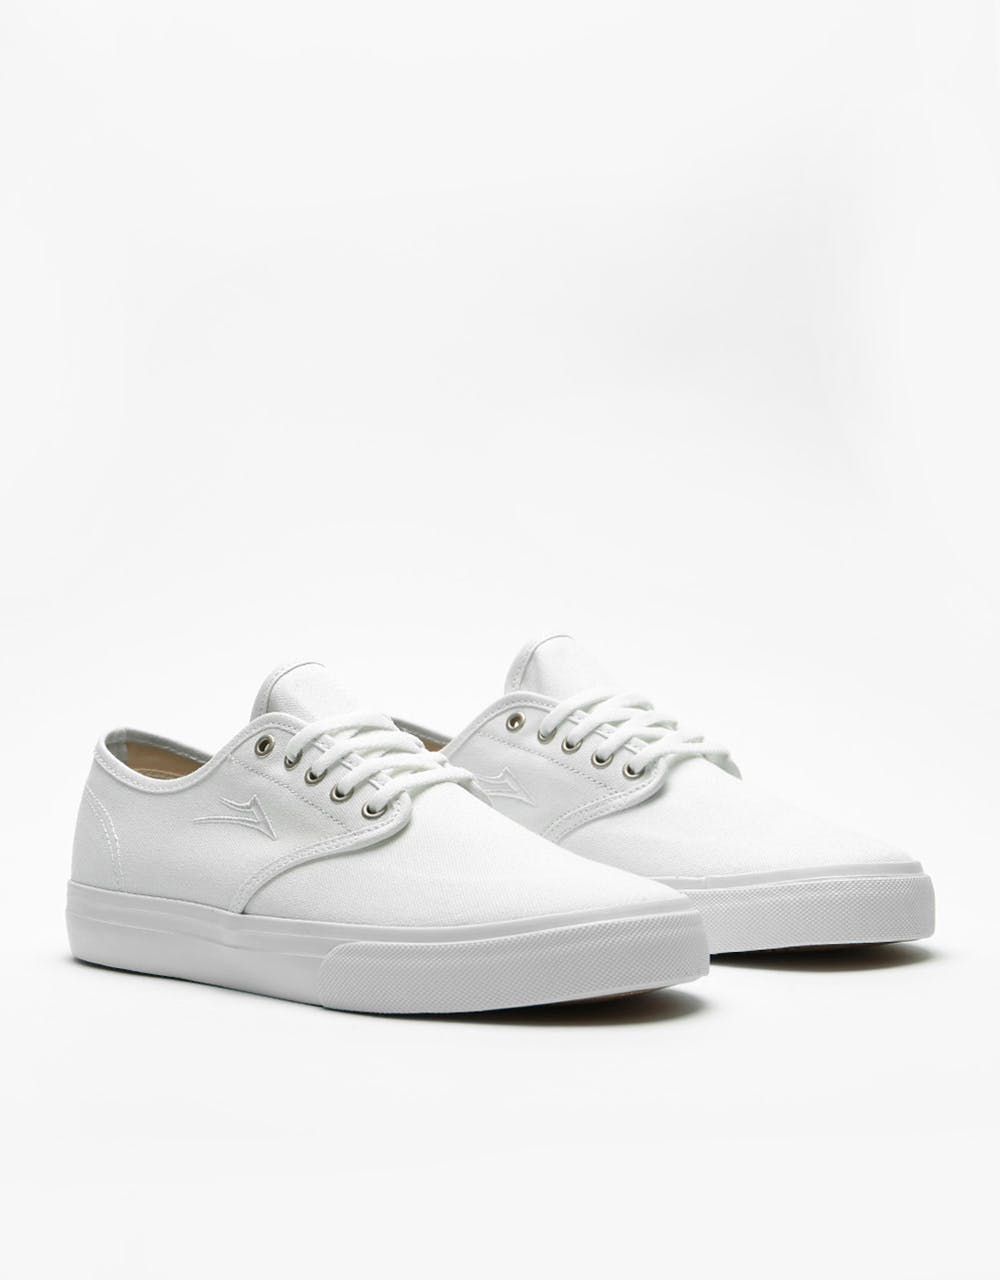 Lakai Oxford Skate Shoes - White Canvas